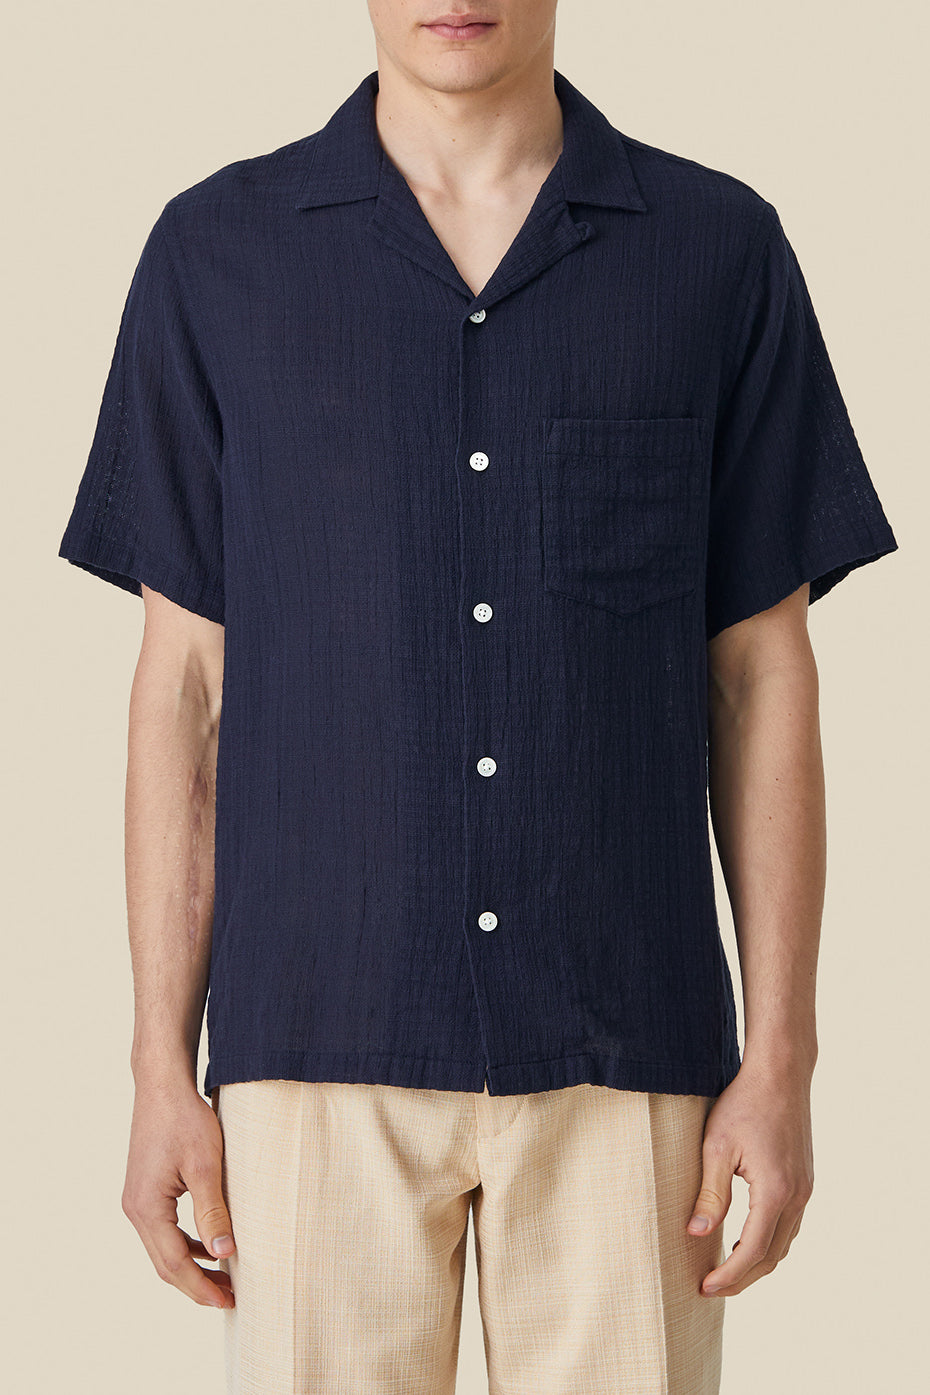  Portuguese Flannel Navy Grain Cotton Shirt